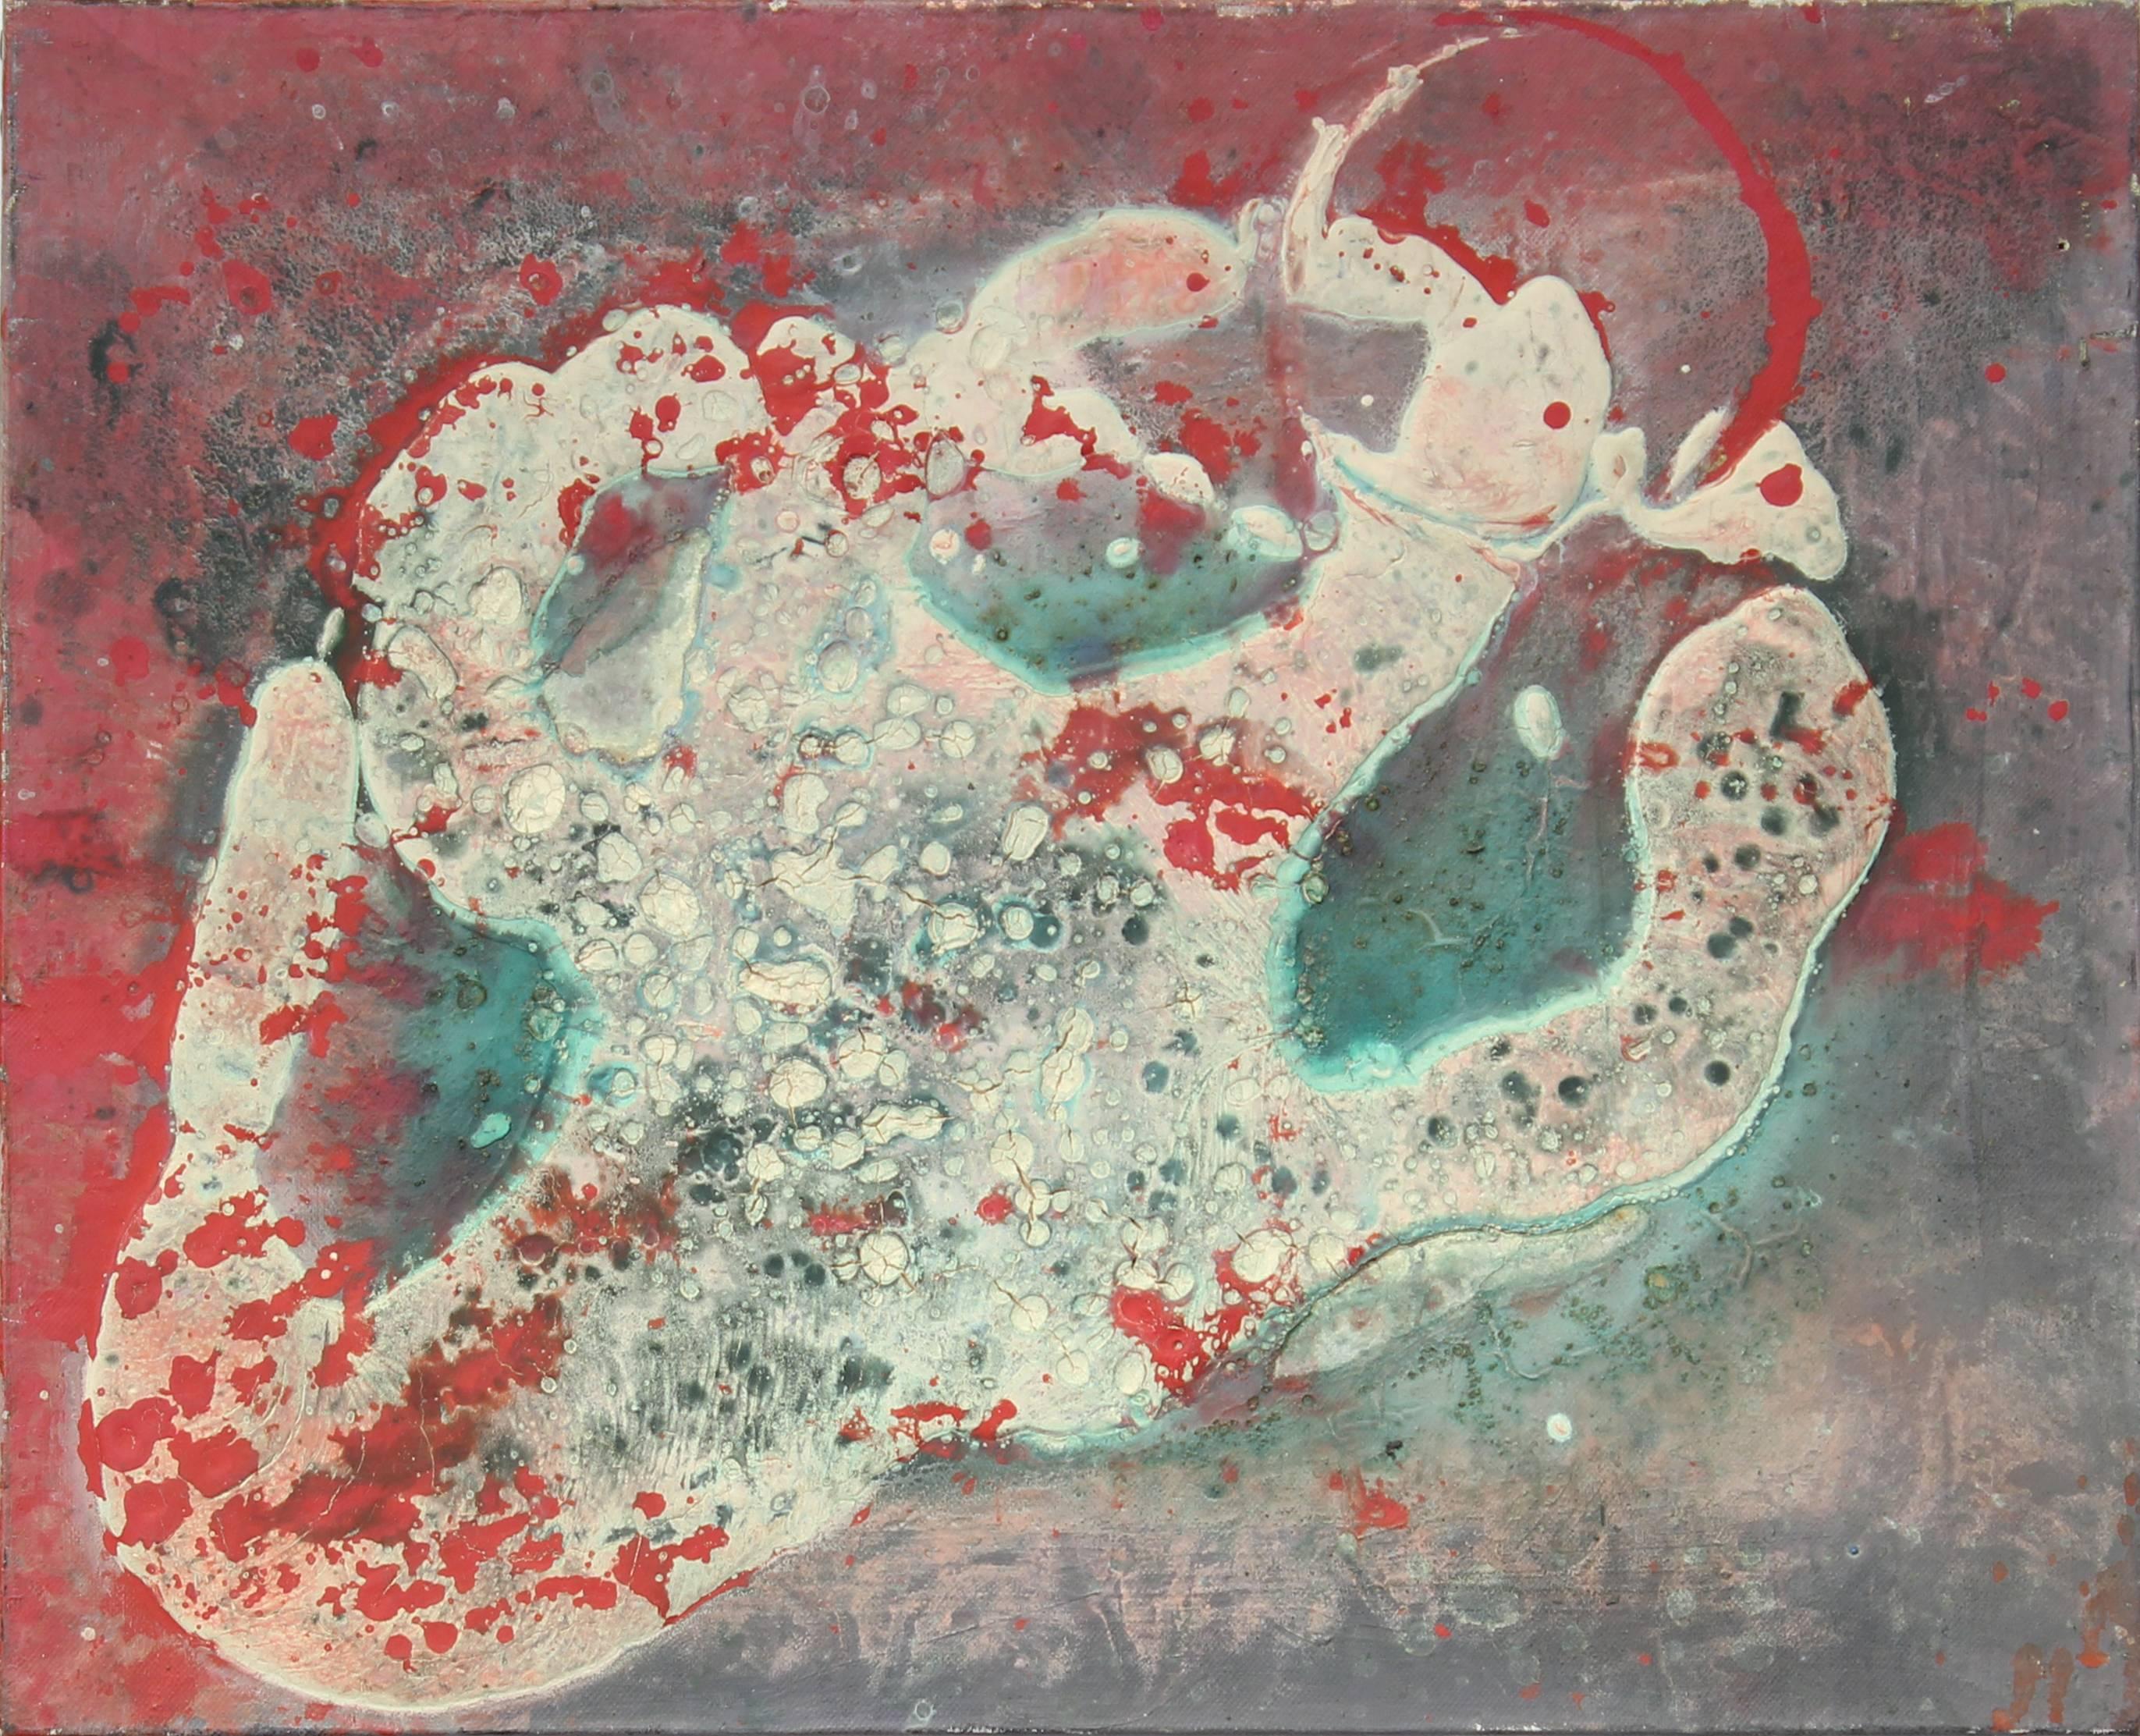 Relief abstrait amorphe texturé rouge, vert et blanc - Art de Petitjean-Sart